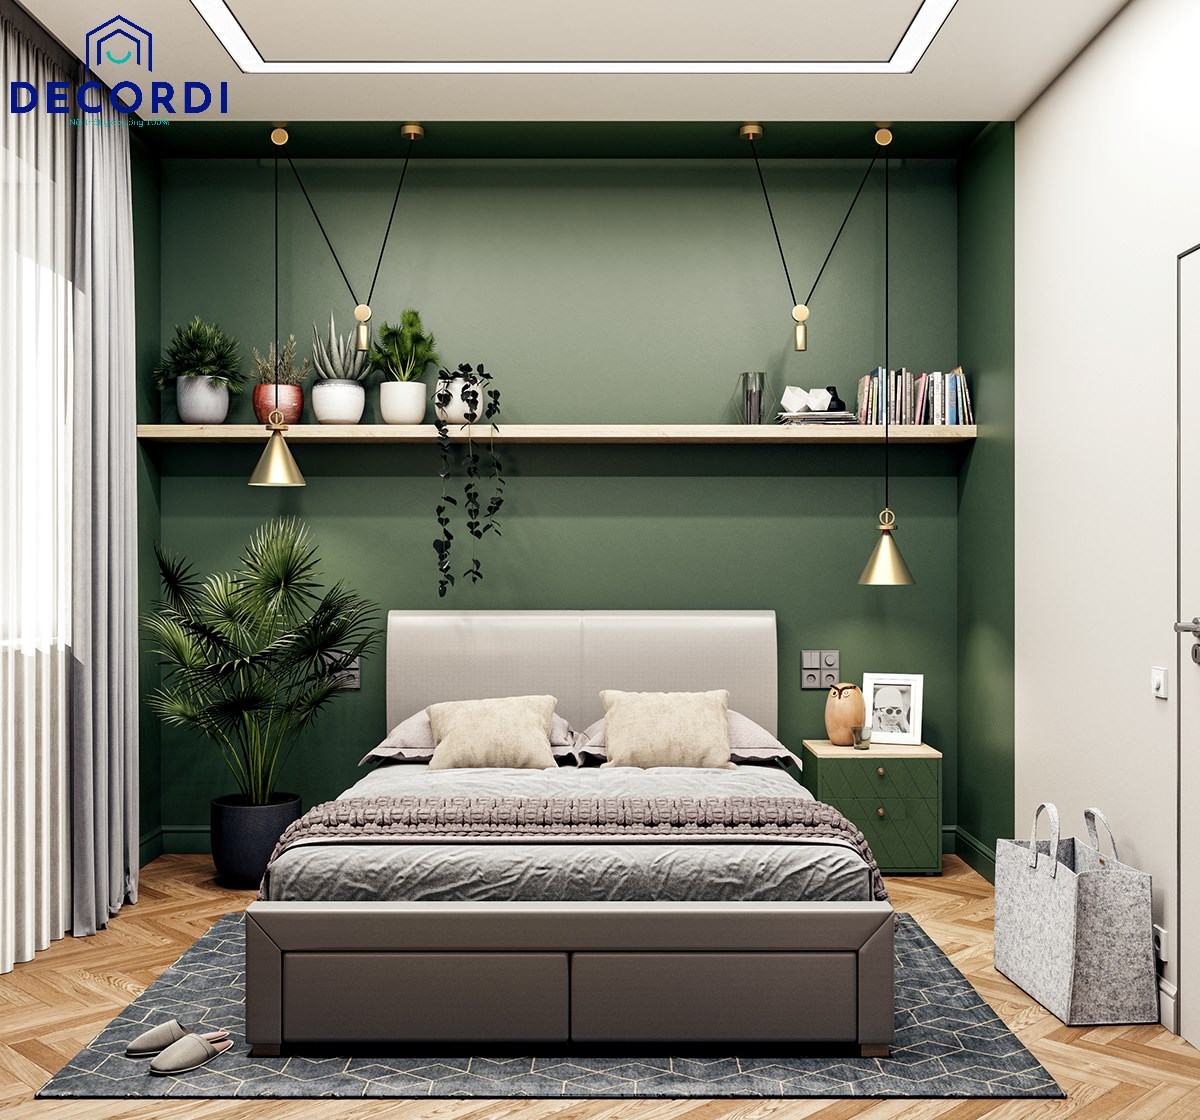  Nội thất phòng ngủ sơn tường màu xanh lá cây kết hợp với cây xanh